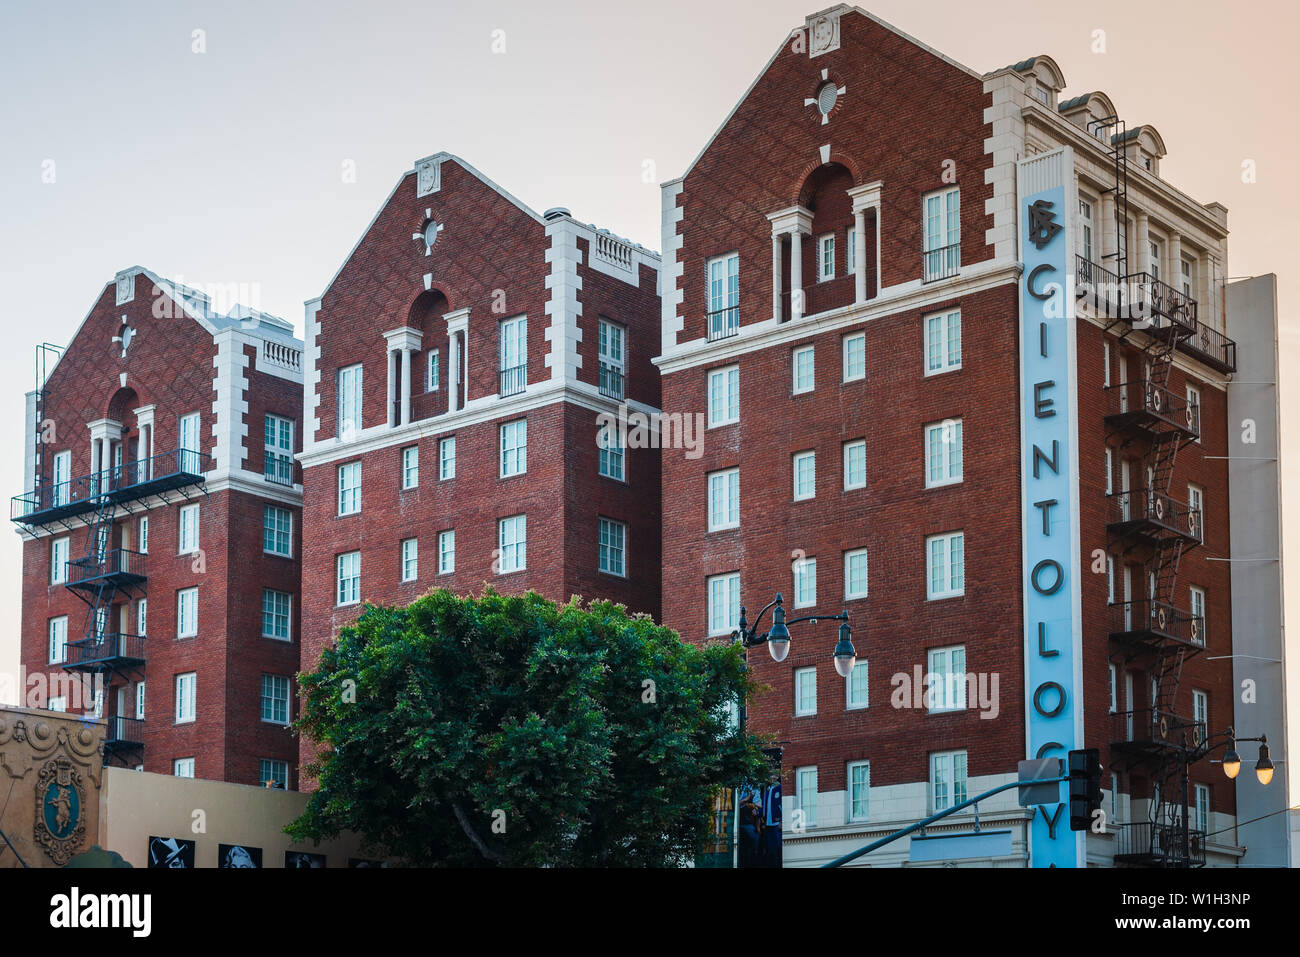 LA, USA - 30. OKTOBER 2018: Ein Schuß der Scientology Kirche Gebäude in Los Angeles, Kalifornien, USA. Sommer 2018. Stockfoto